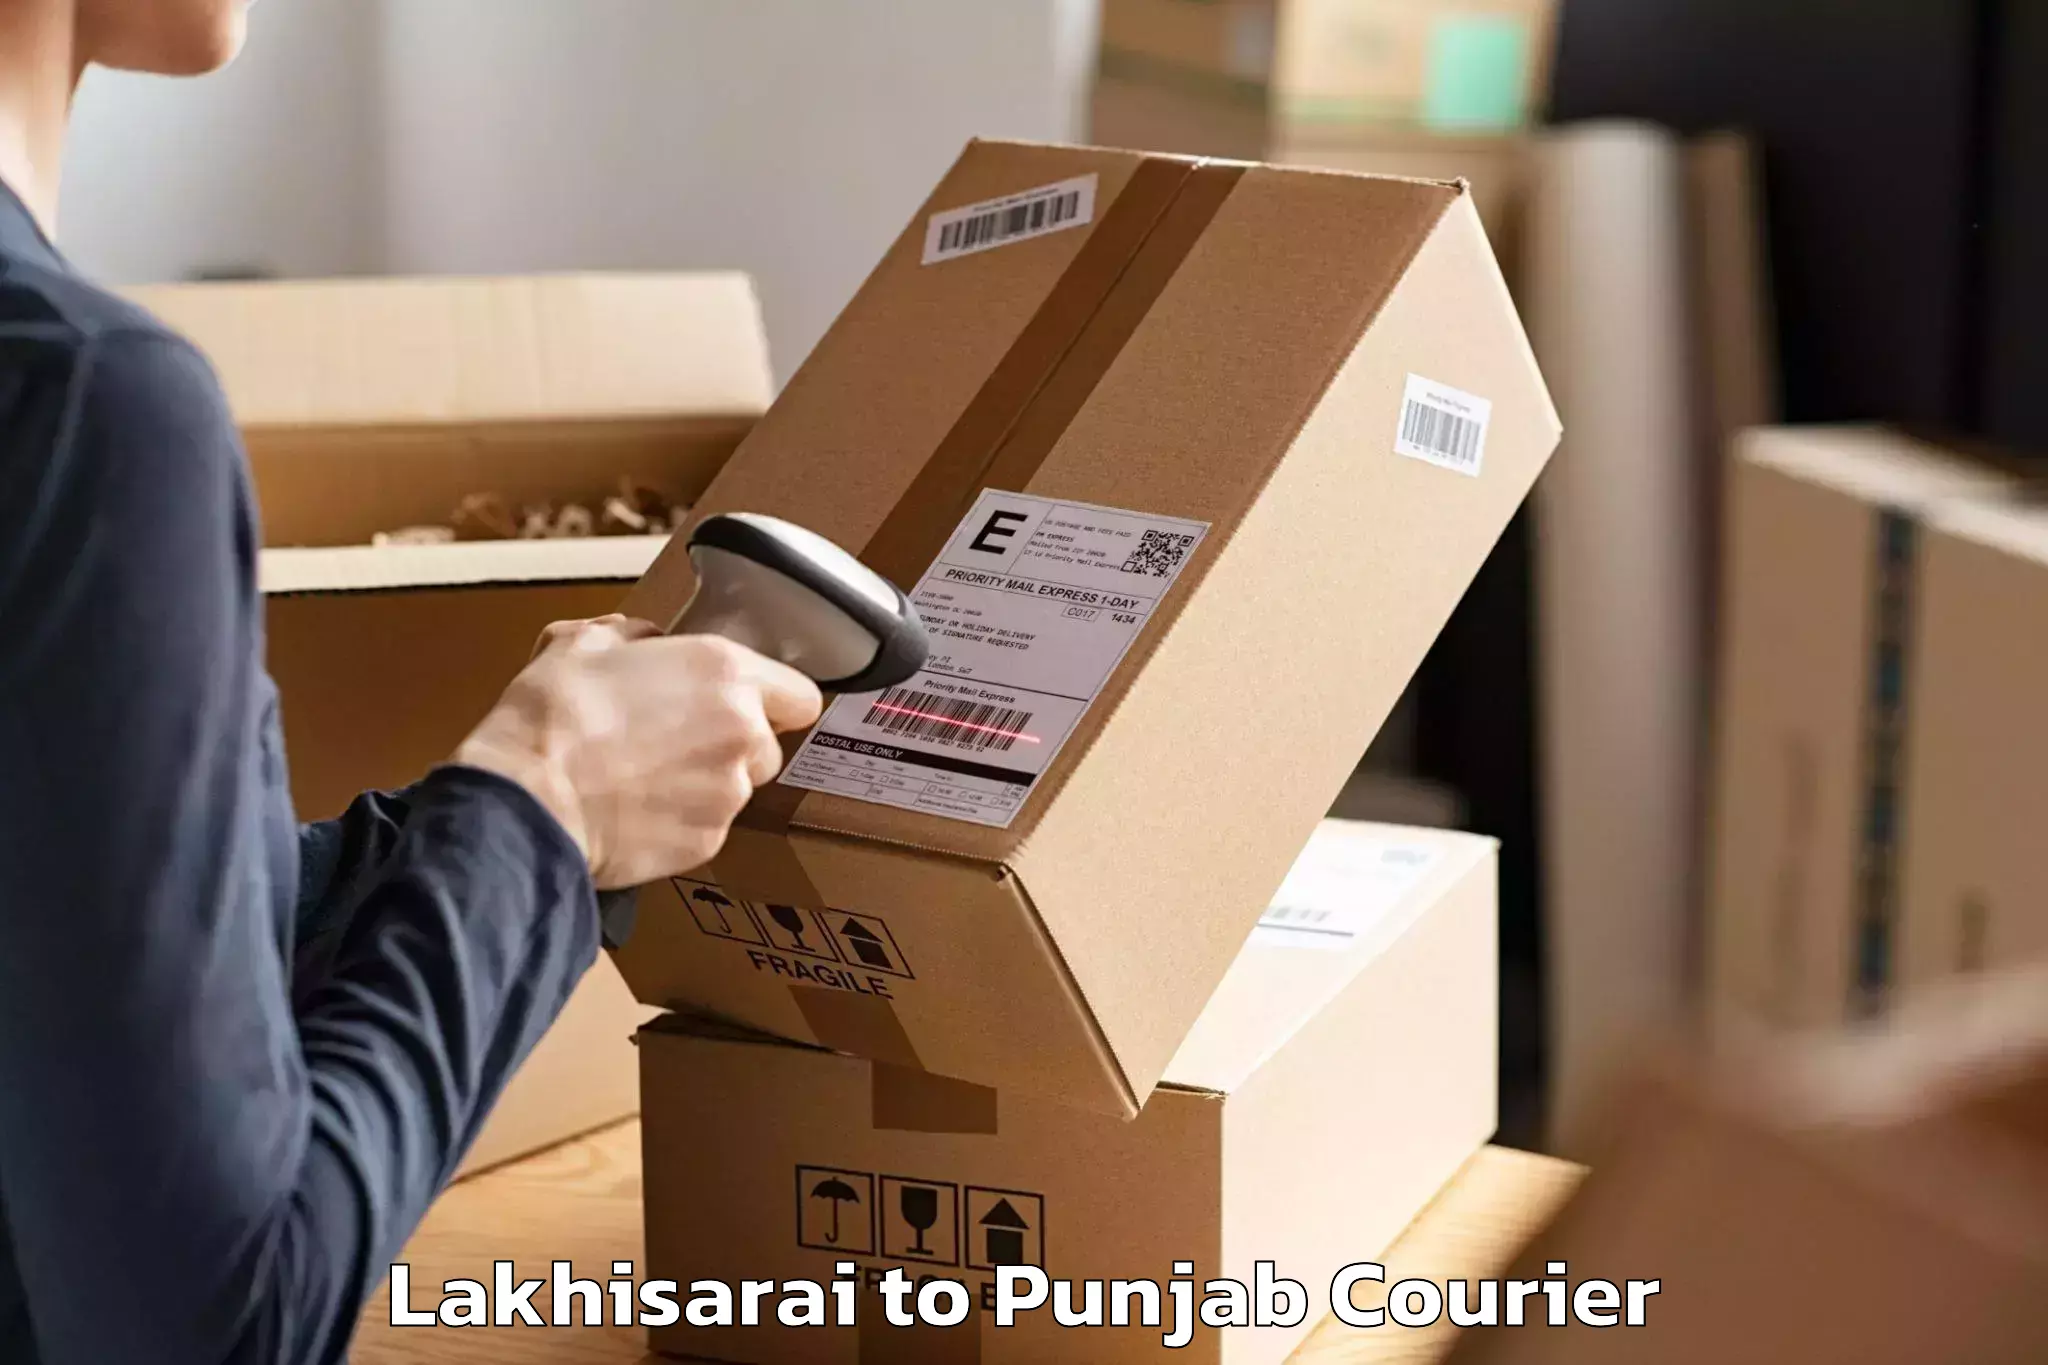 Furniture transport experts Lakhisarai to Jalandhar